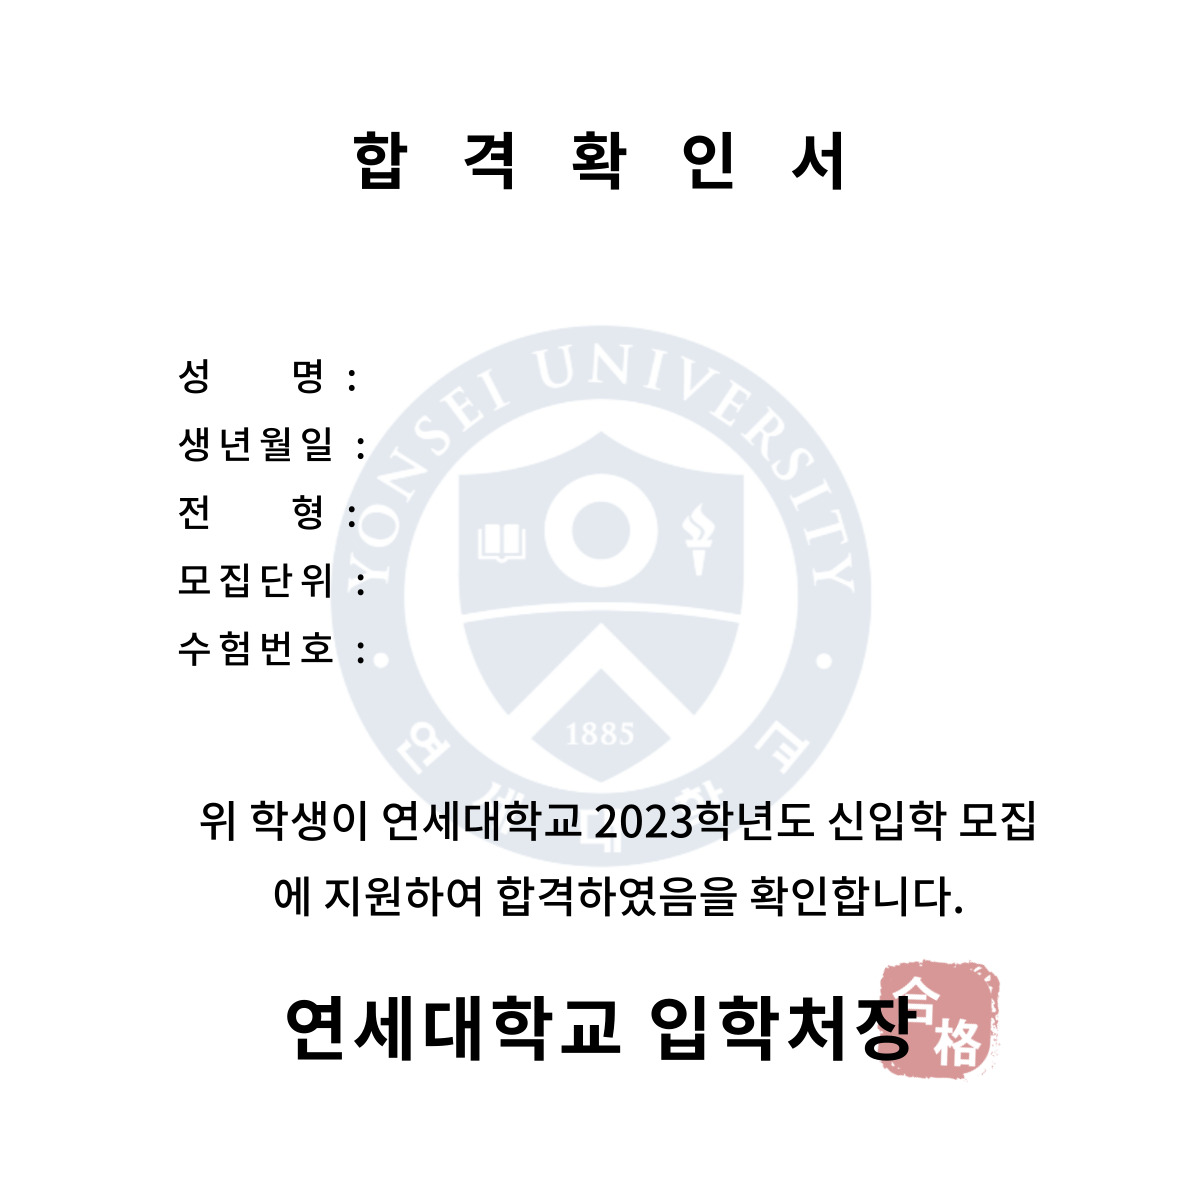 공부자극짤] 서울 지역 23학번 대학 합격증 : 의학 계열 Q&A